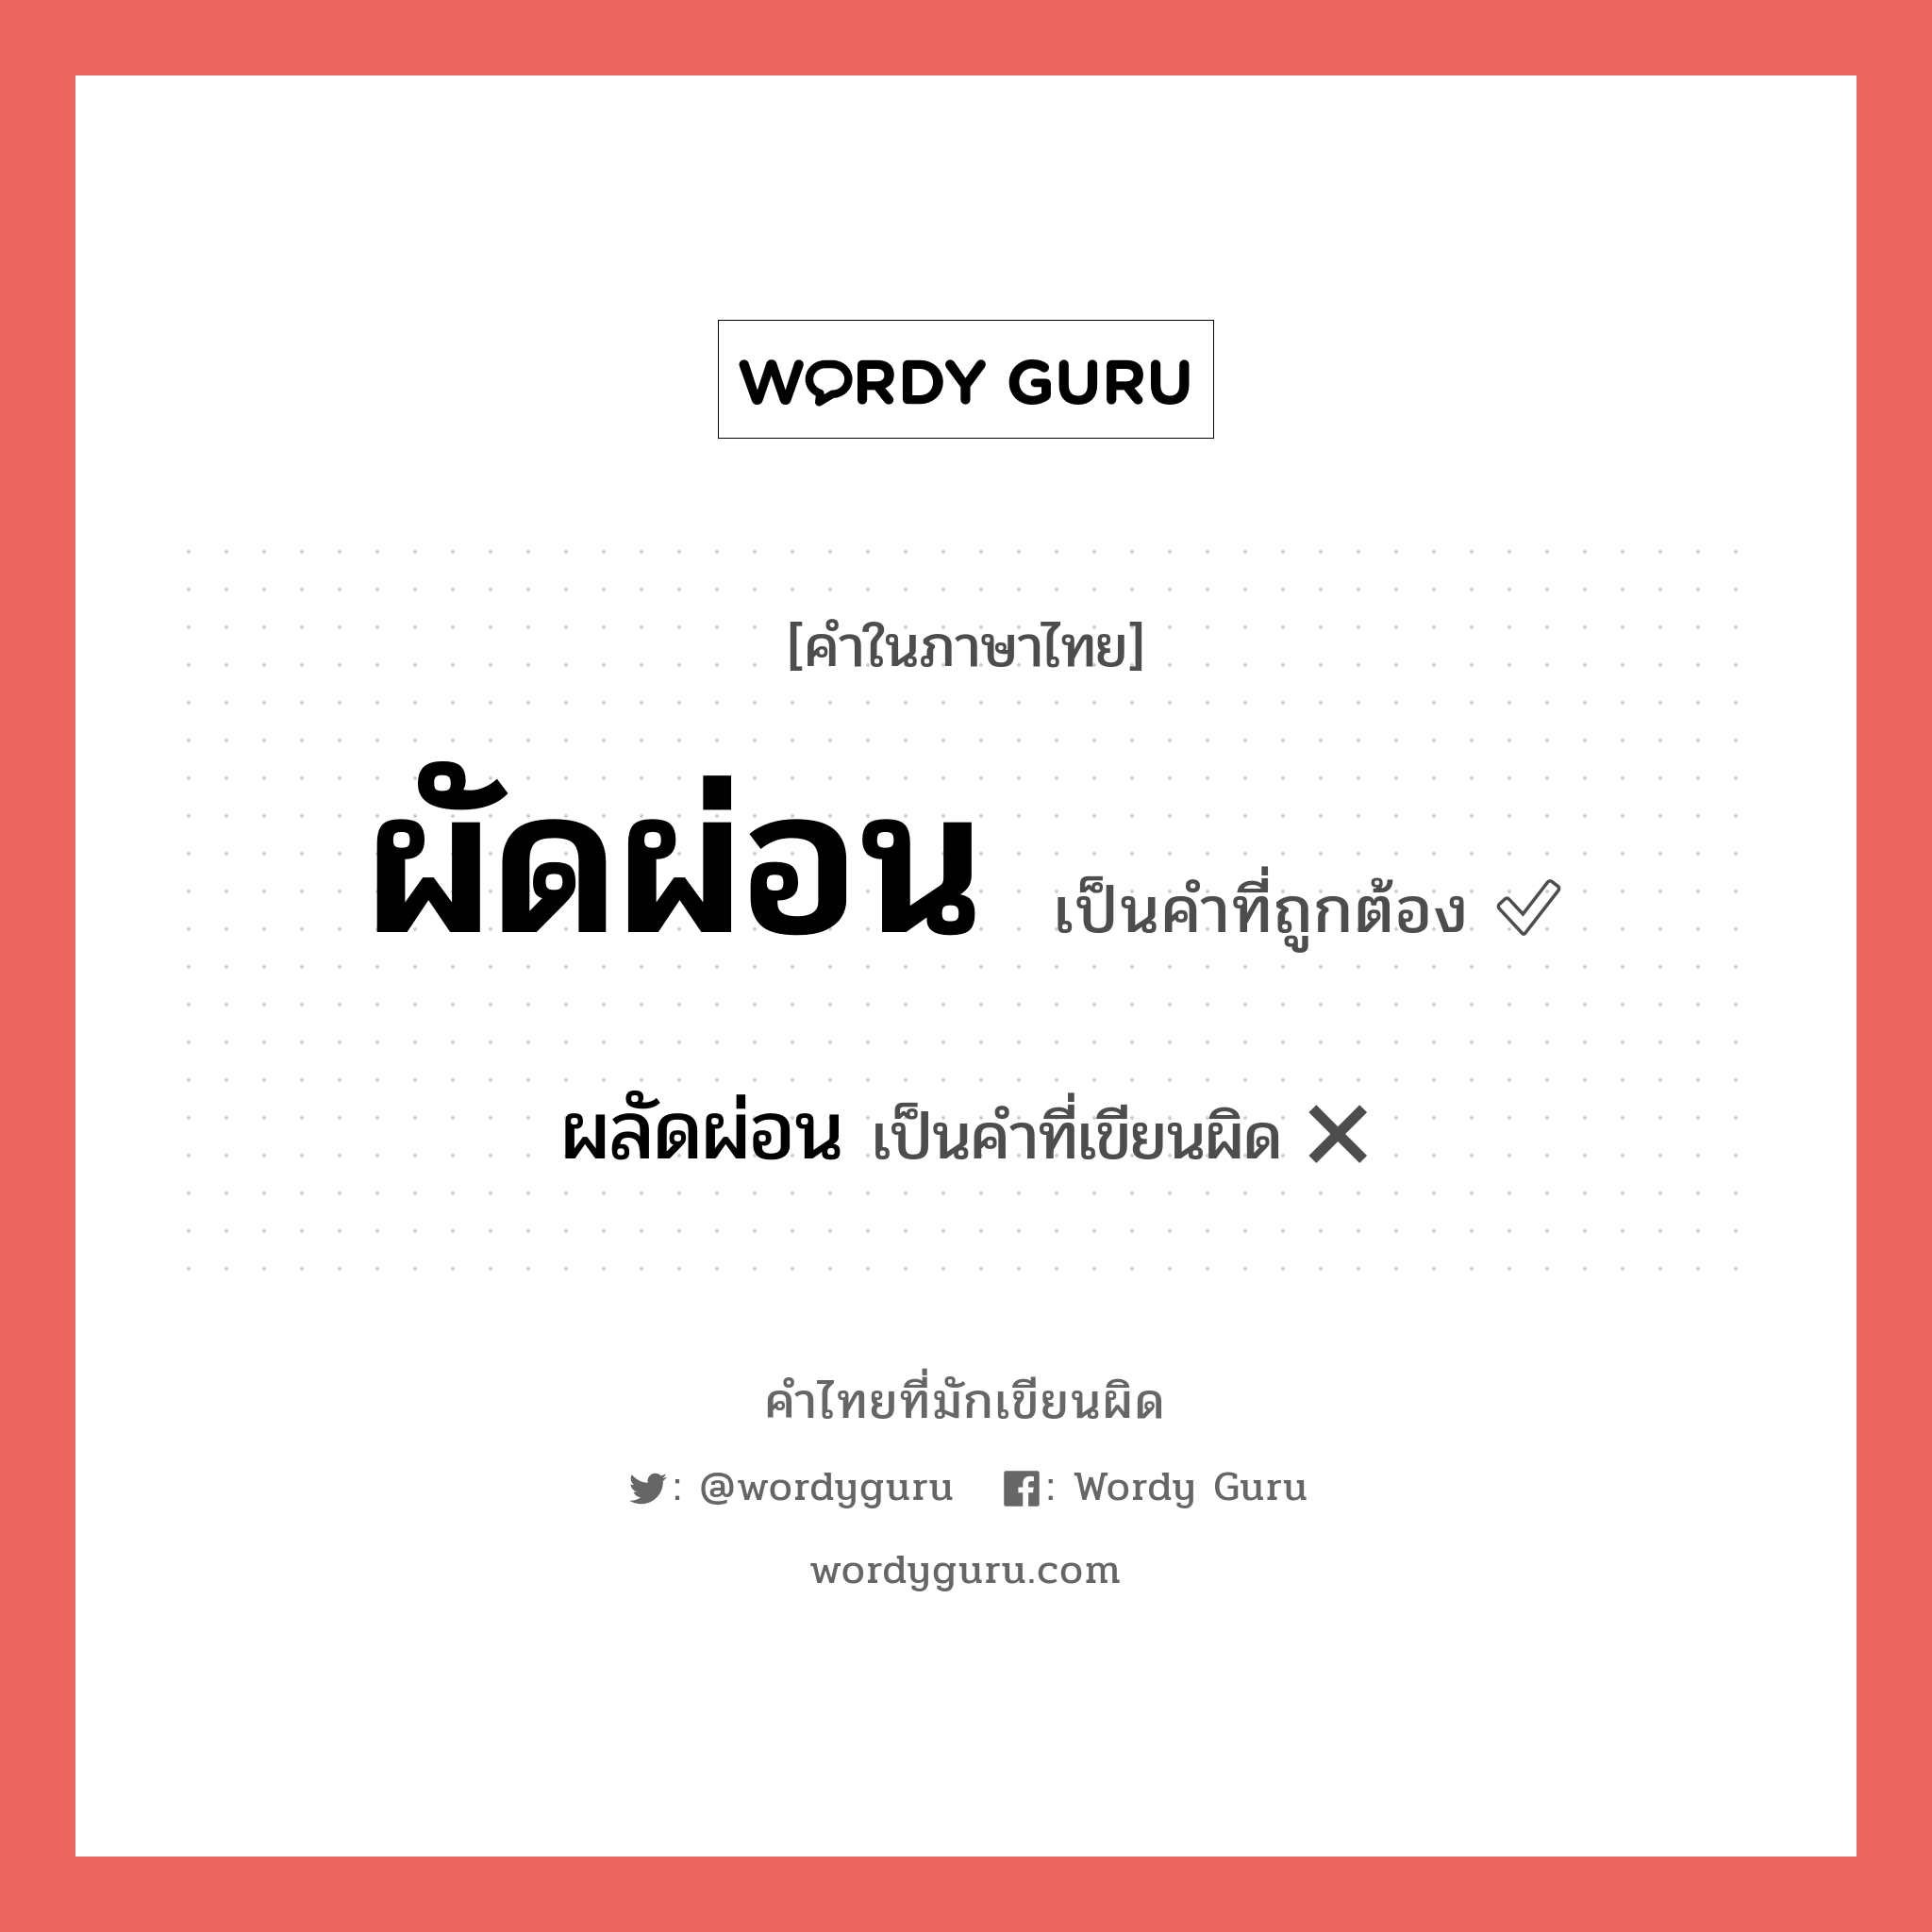 ผลัดผ่อน หรือ ผัดผ่อน คำไหนเขียนถูก?, คำในภาษาไทยที่มักเขียนผิด ผลัดผ่อน คำที่ผิด ❌ ผัดผ่อน